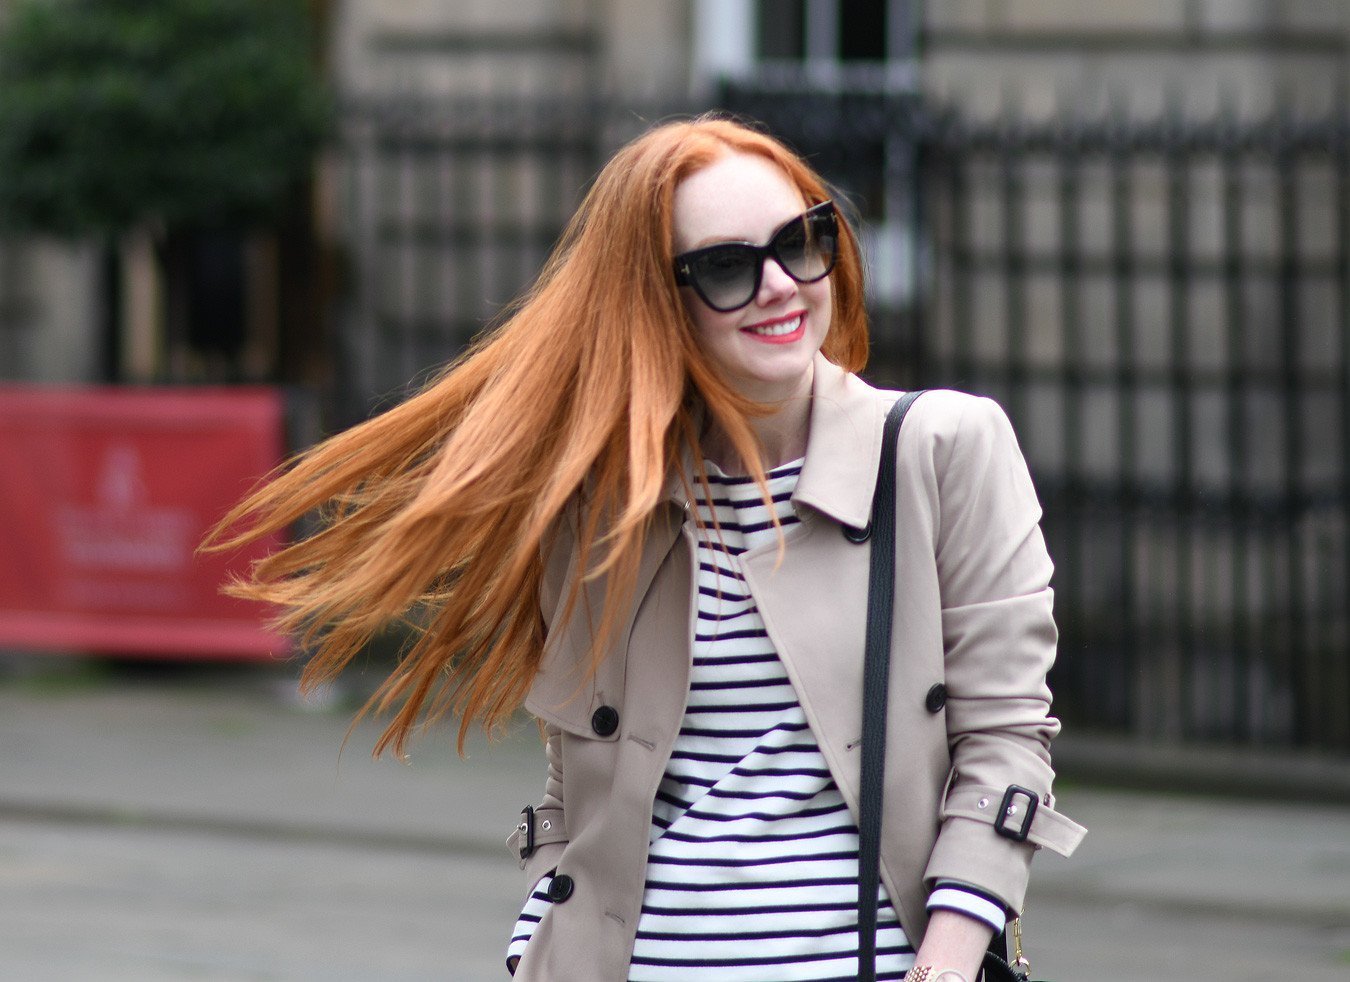 Scottish fashion and lifestyle blogger